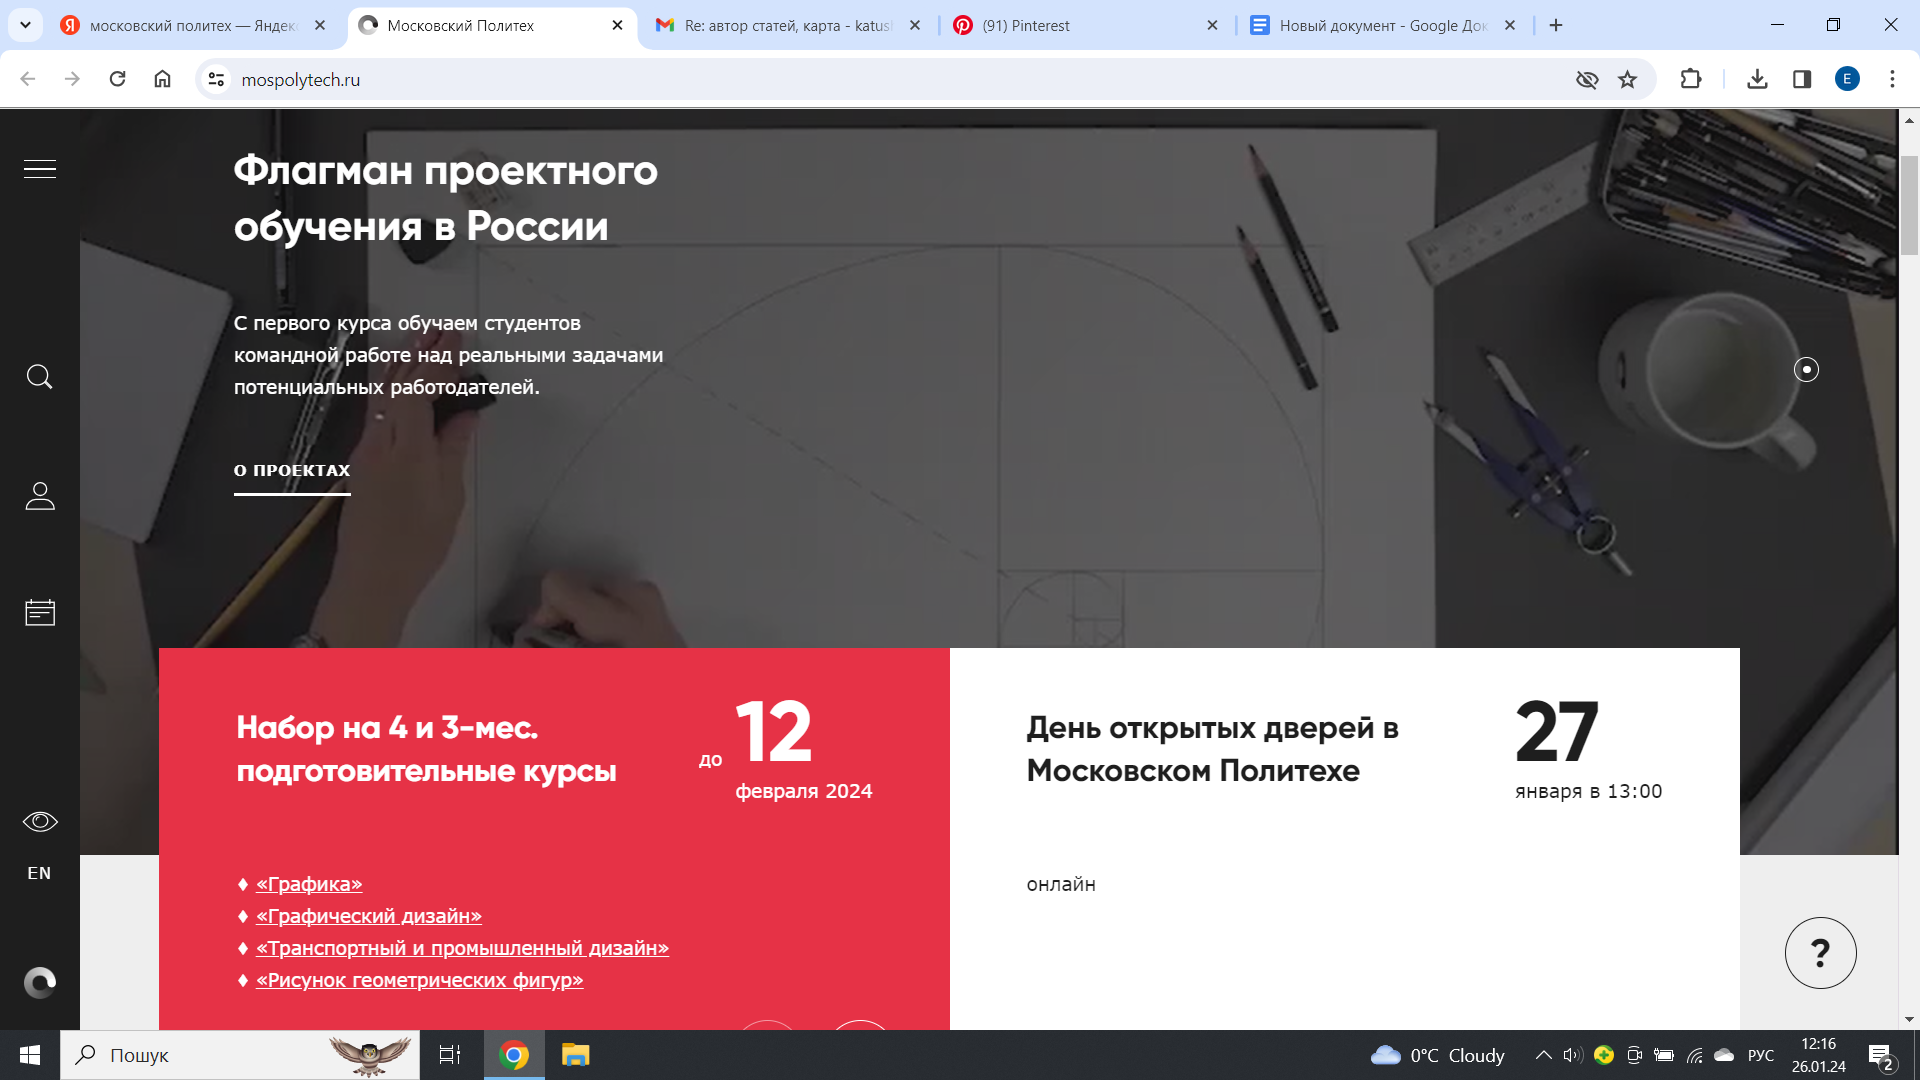 Московский политехнический университет, официальный сайт, образовательные программы